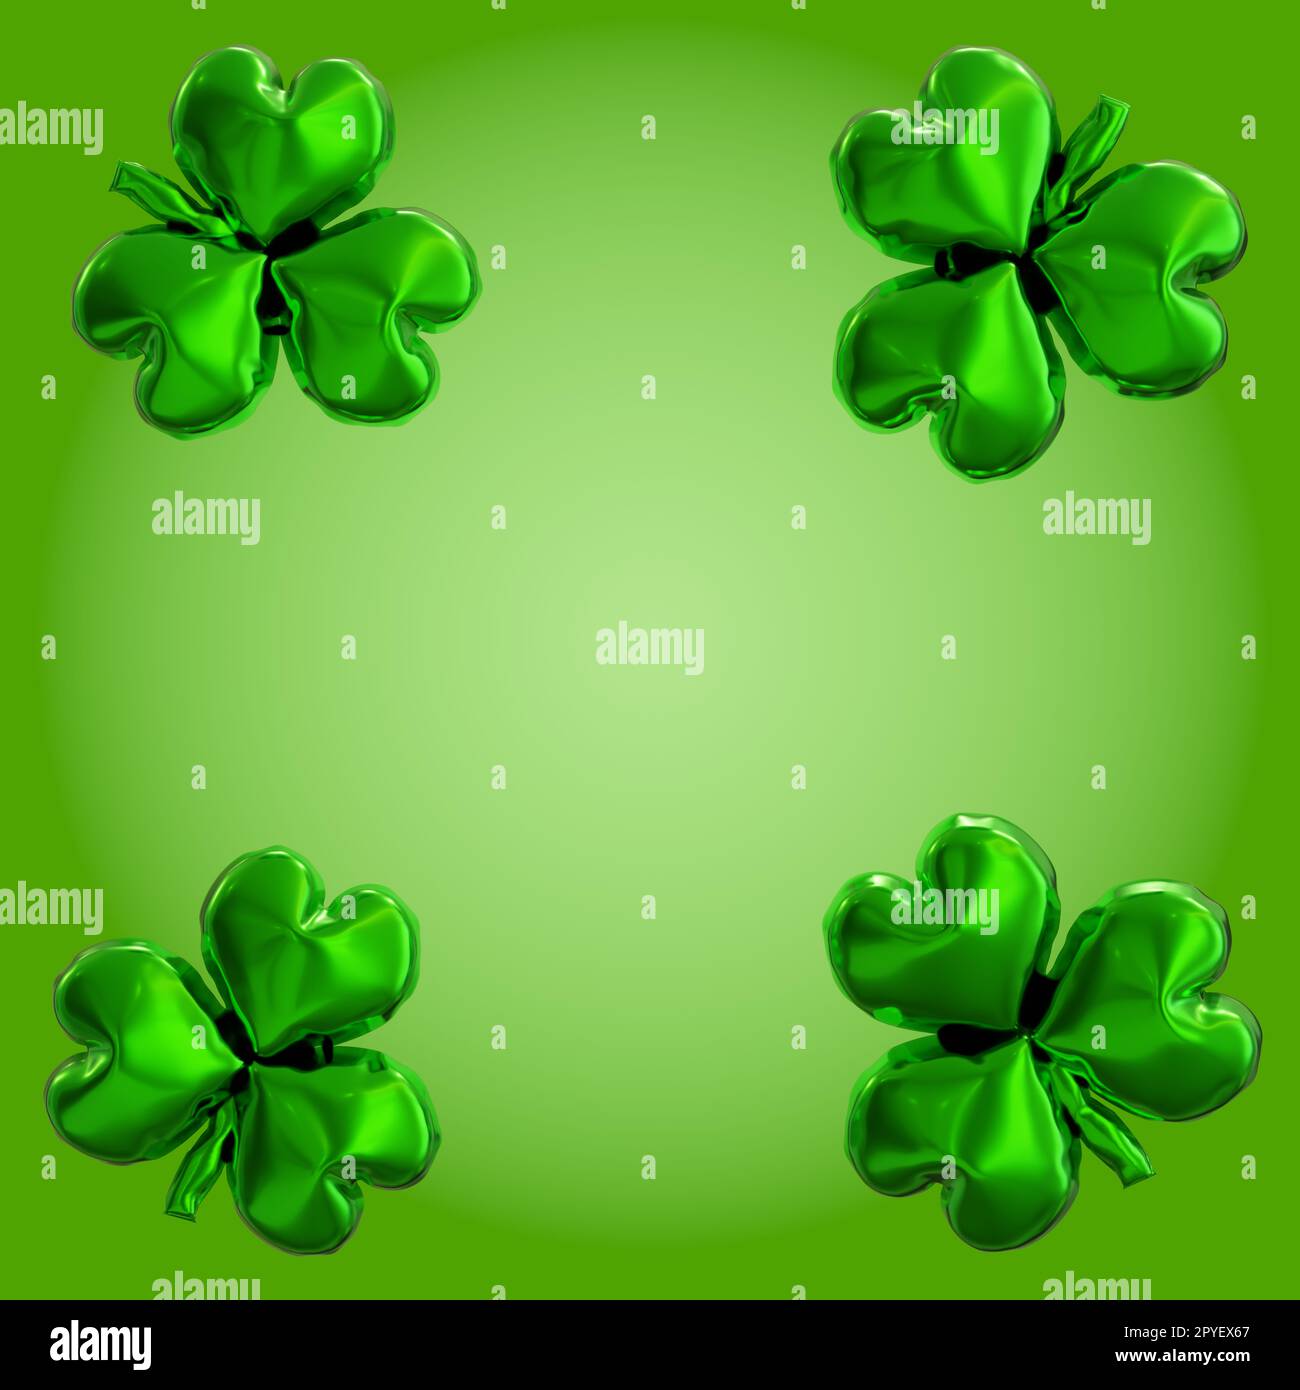 Quattro palloncini in elio lucido con forma a trifoglio su sfondo verde sfumato Foto Stock